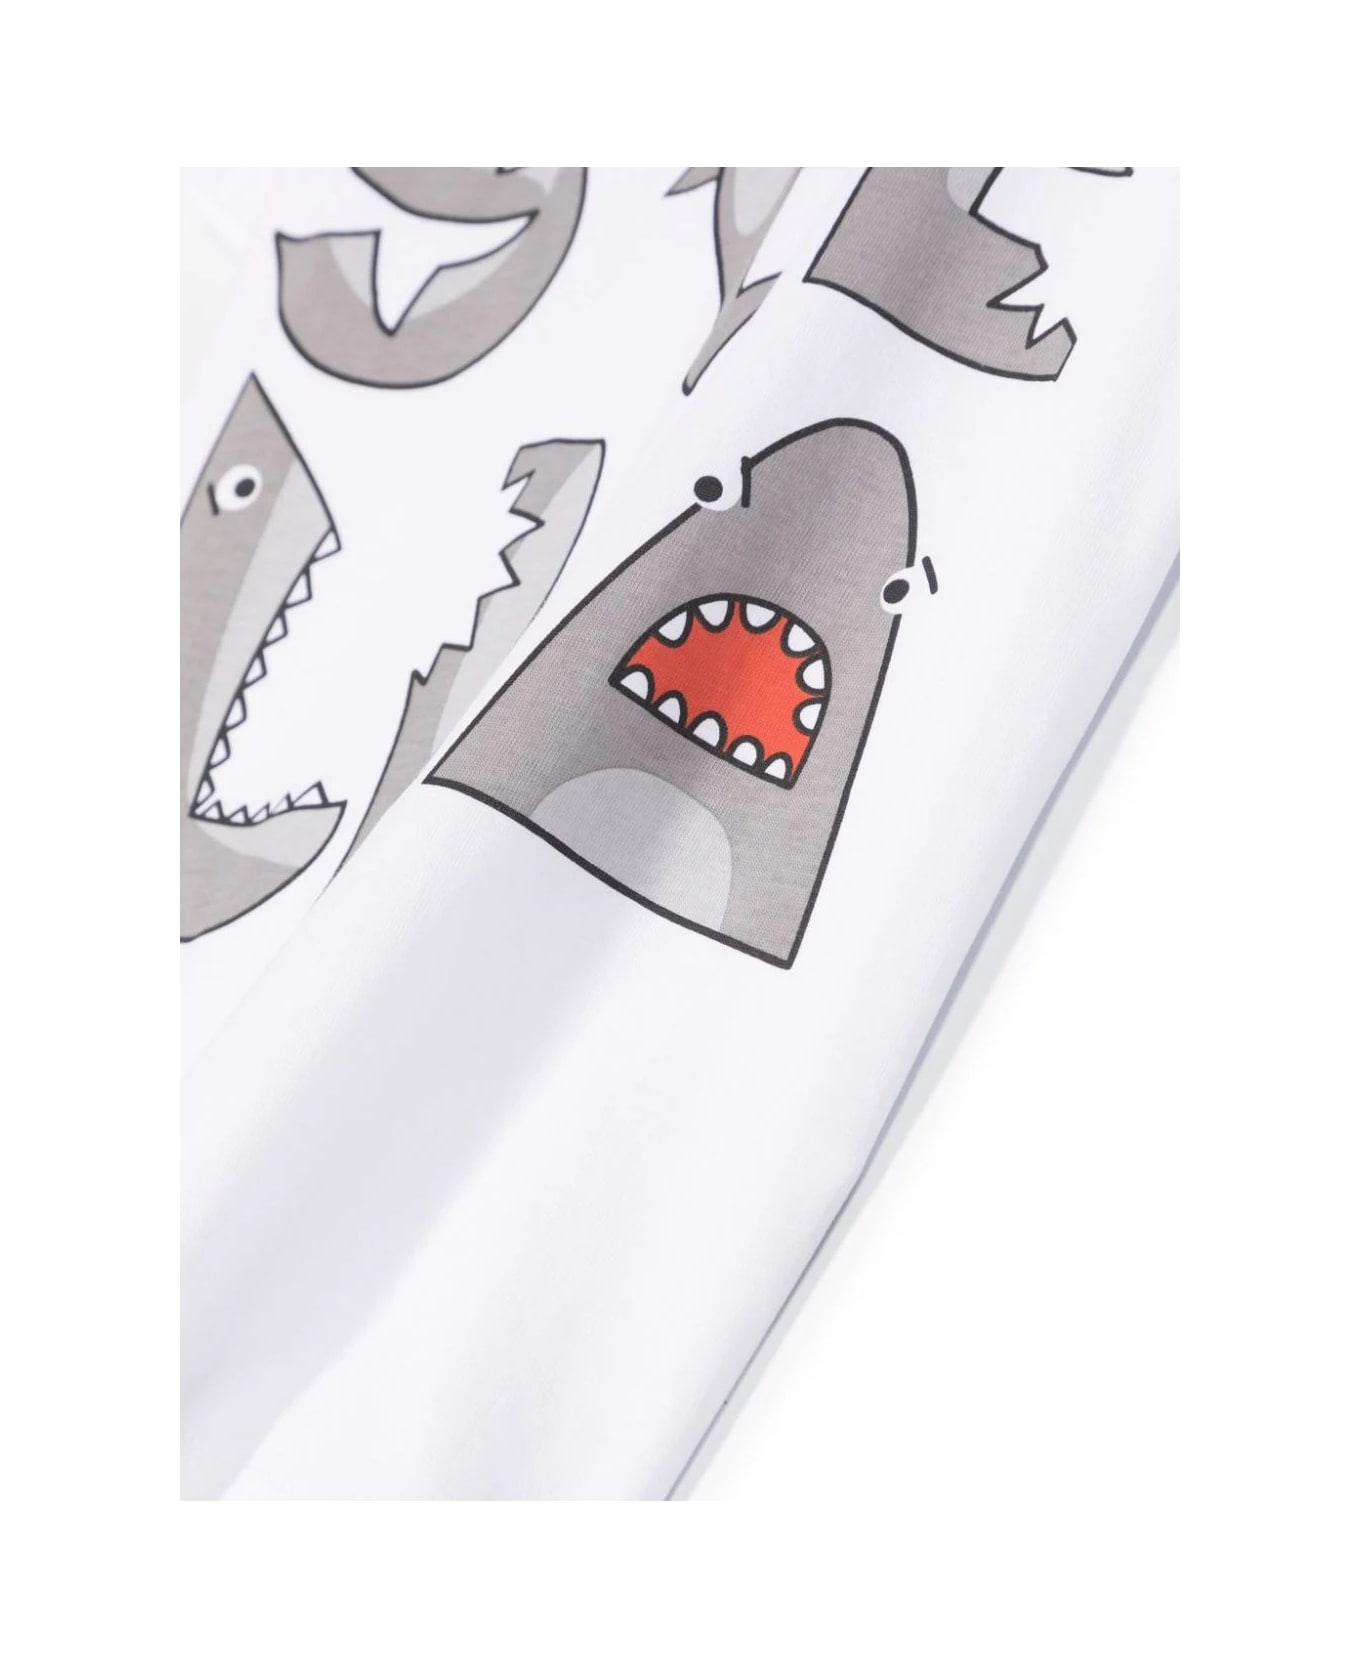 Stella McCartney Kids "stella" Shark Print T-shirt In White - White Tシャツ＆ポロシャツ